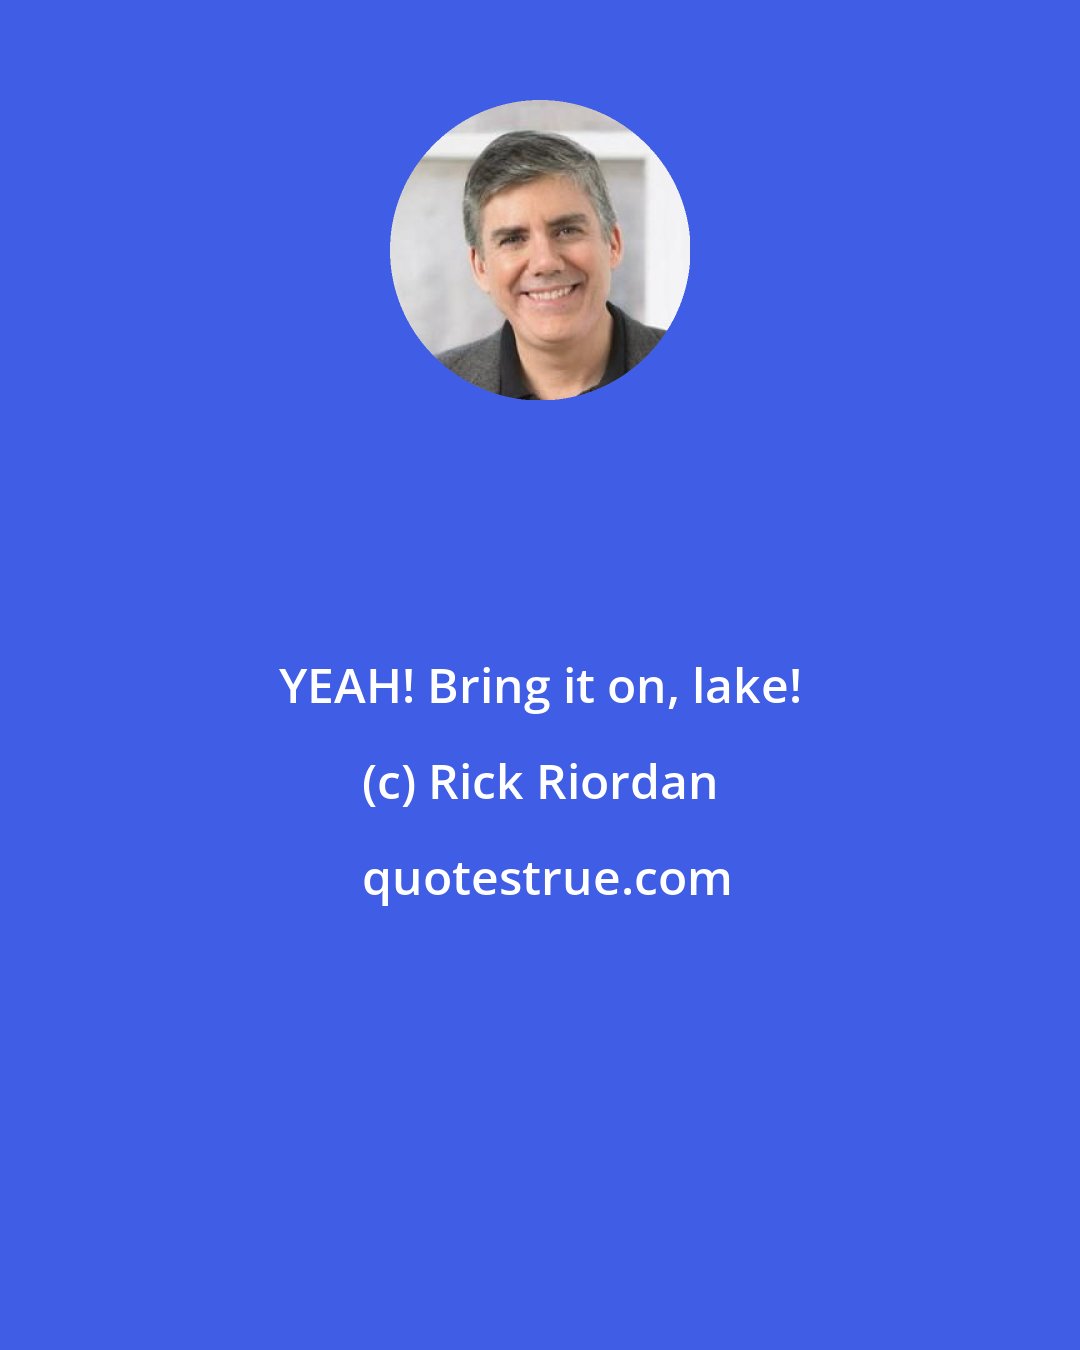 Rick Riordan: YEAH! Bring it on, lake!